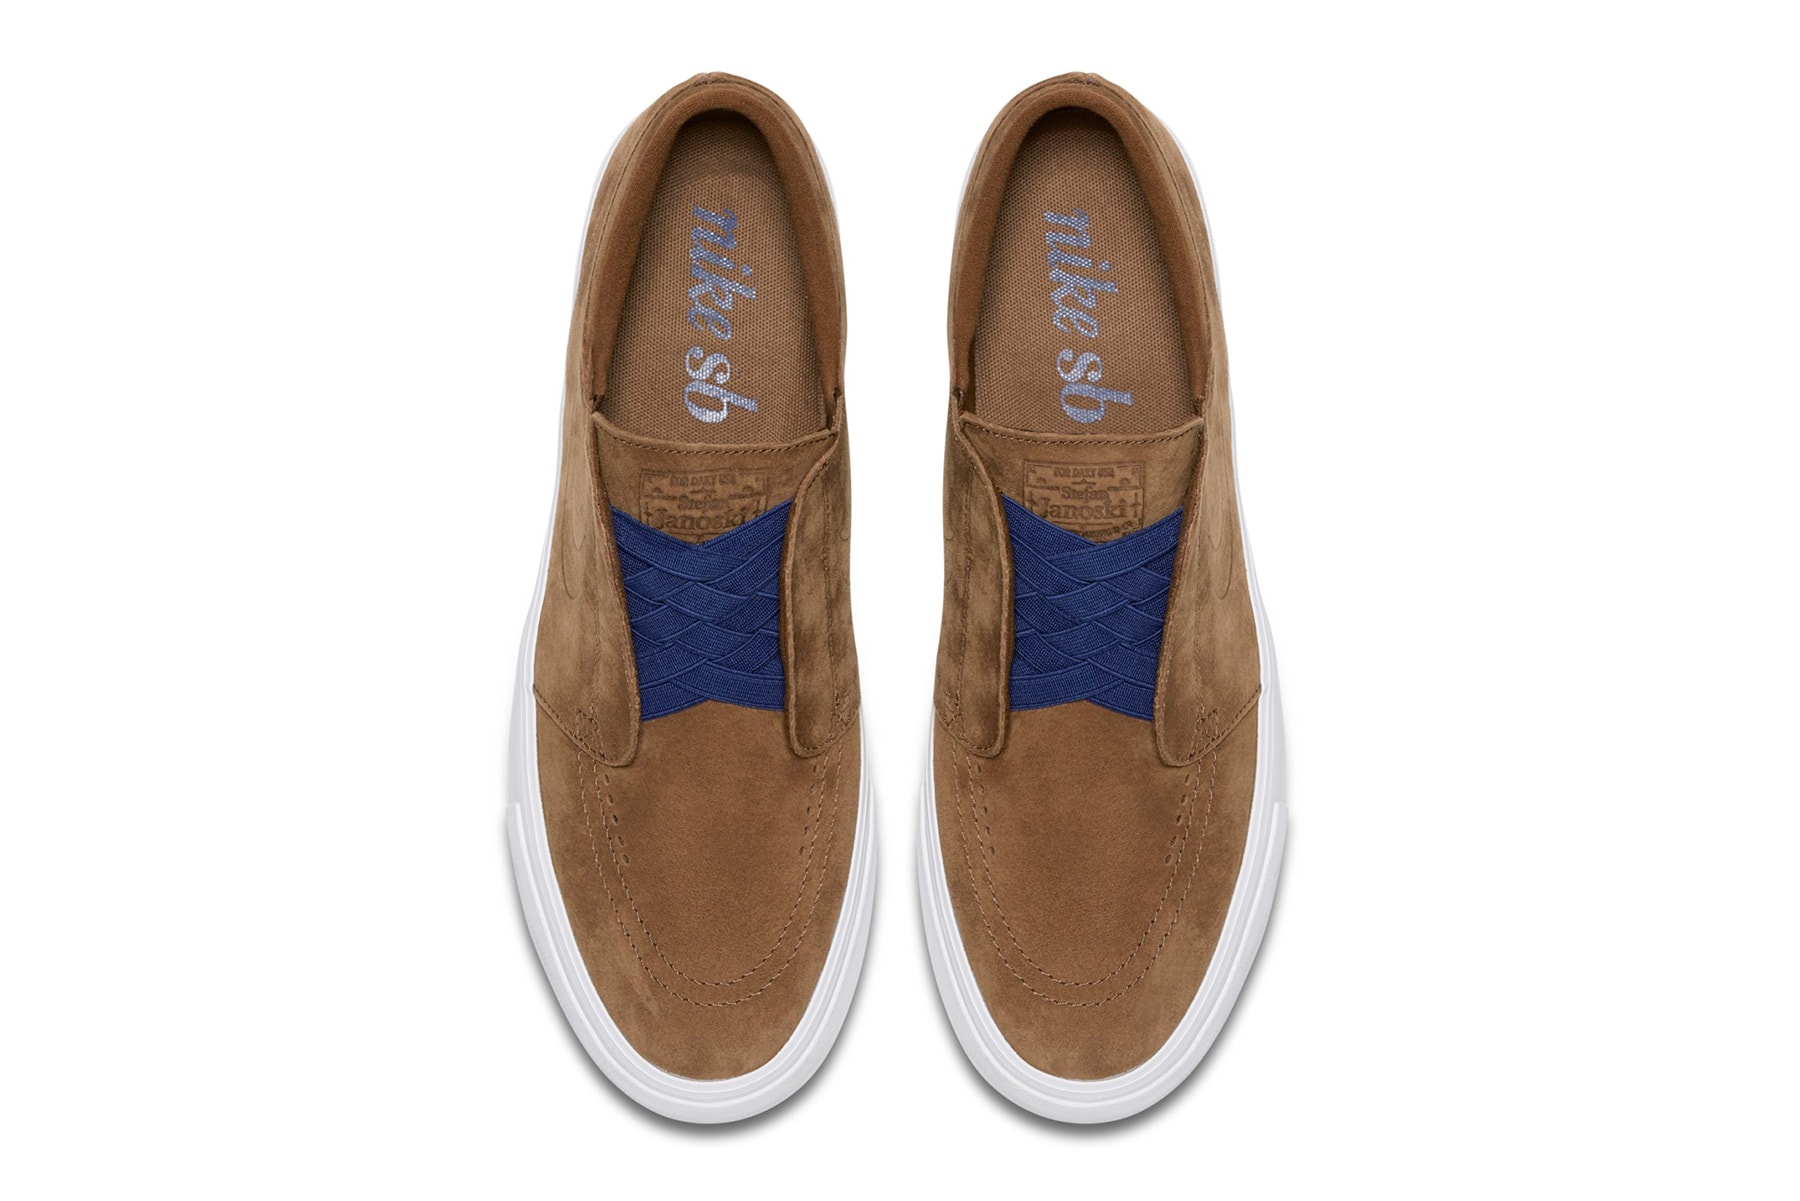 Nike SB Zoom Janoski HT Slip-On "British Tan" release date sneaker skateboarding stefan blue void